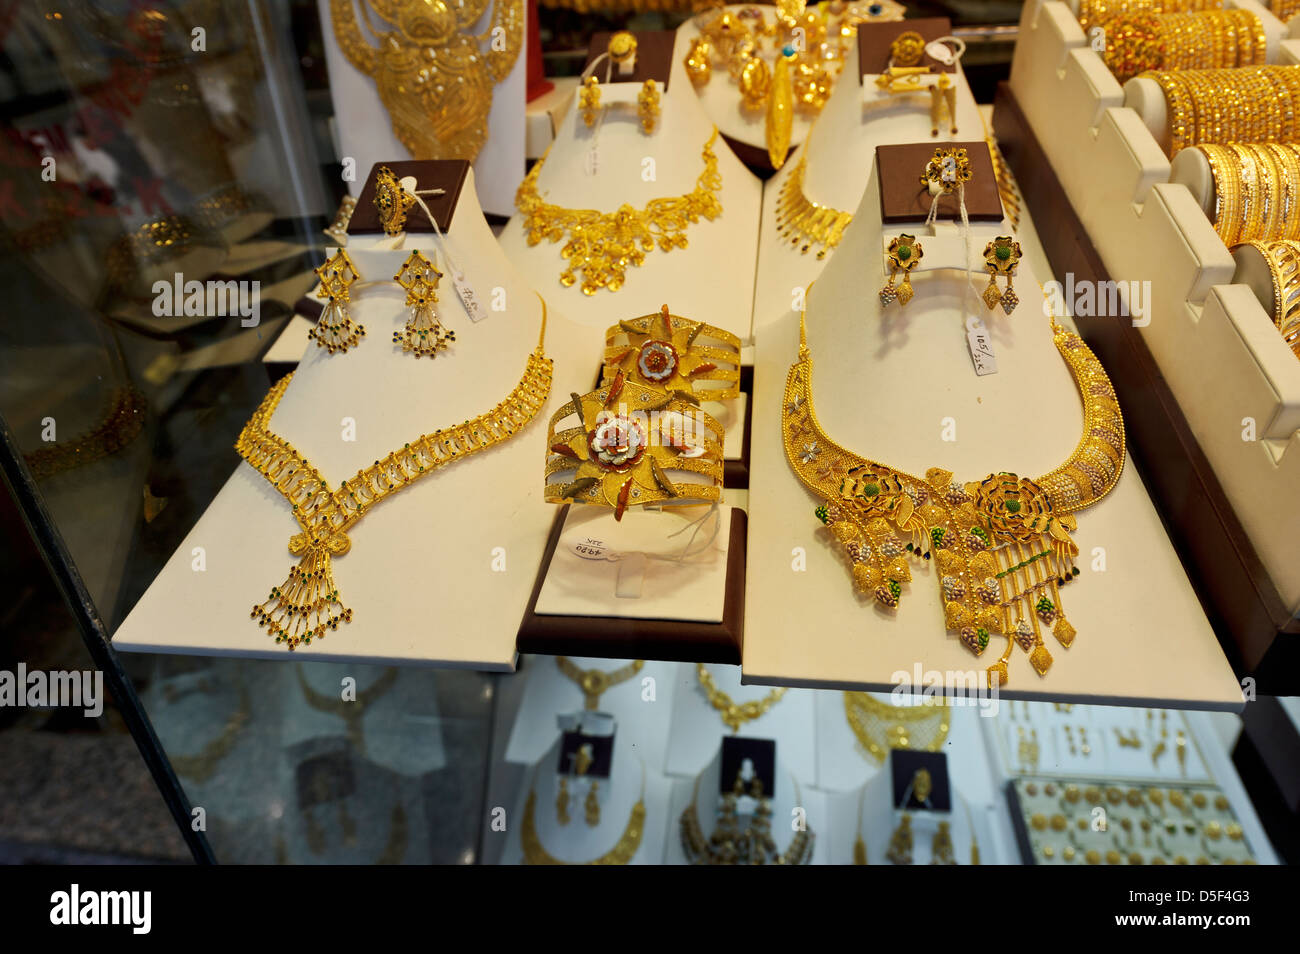 Goldschmuck - Ringe, Halsketten, Armbänder für Verkauf, Gold Souk Dubai,  Vereinigte Arabische Emirate Stockfotografie - Alamy